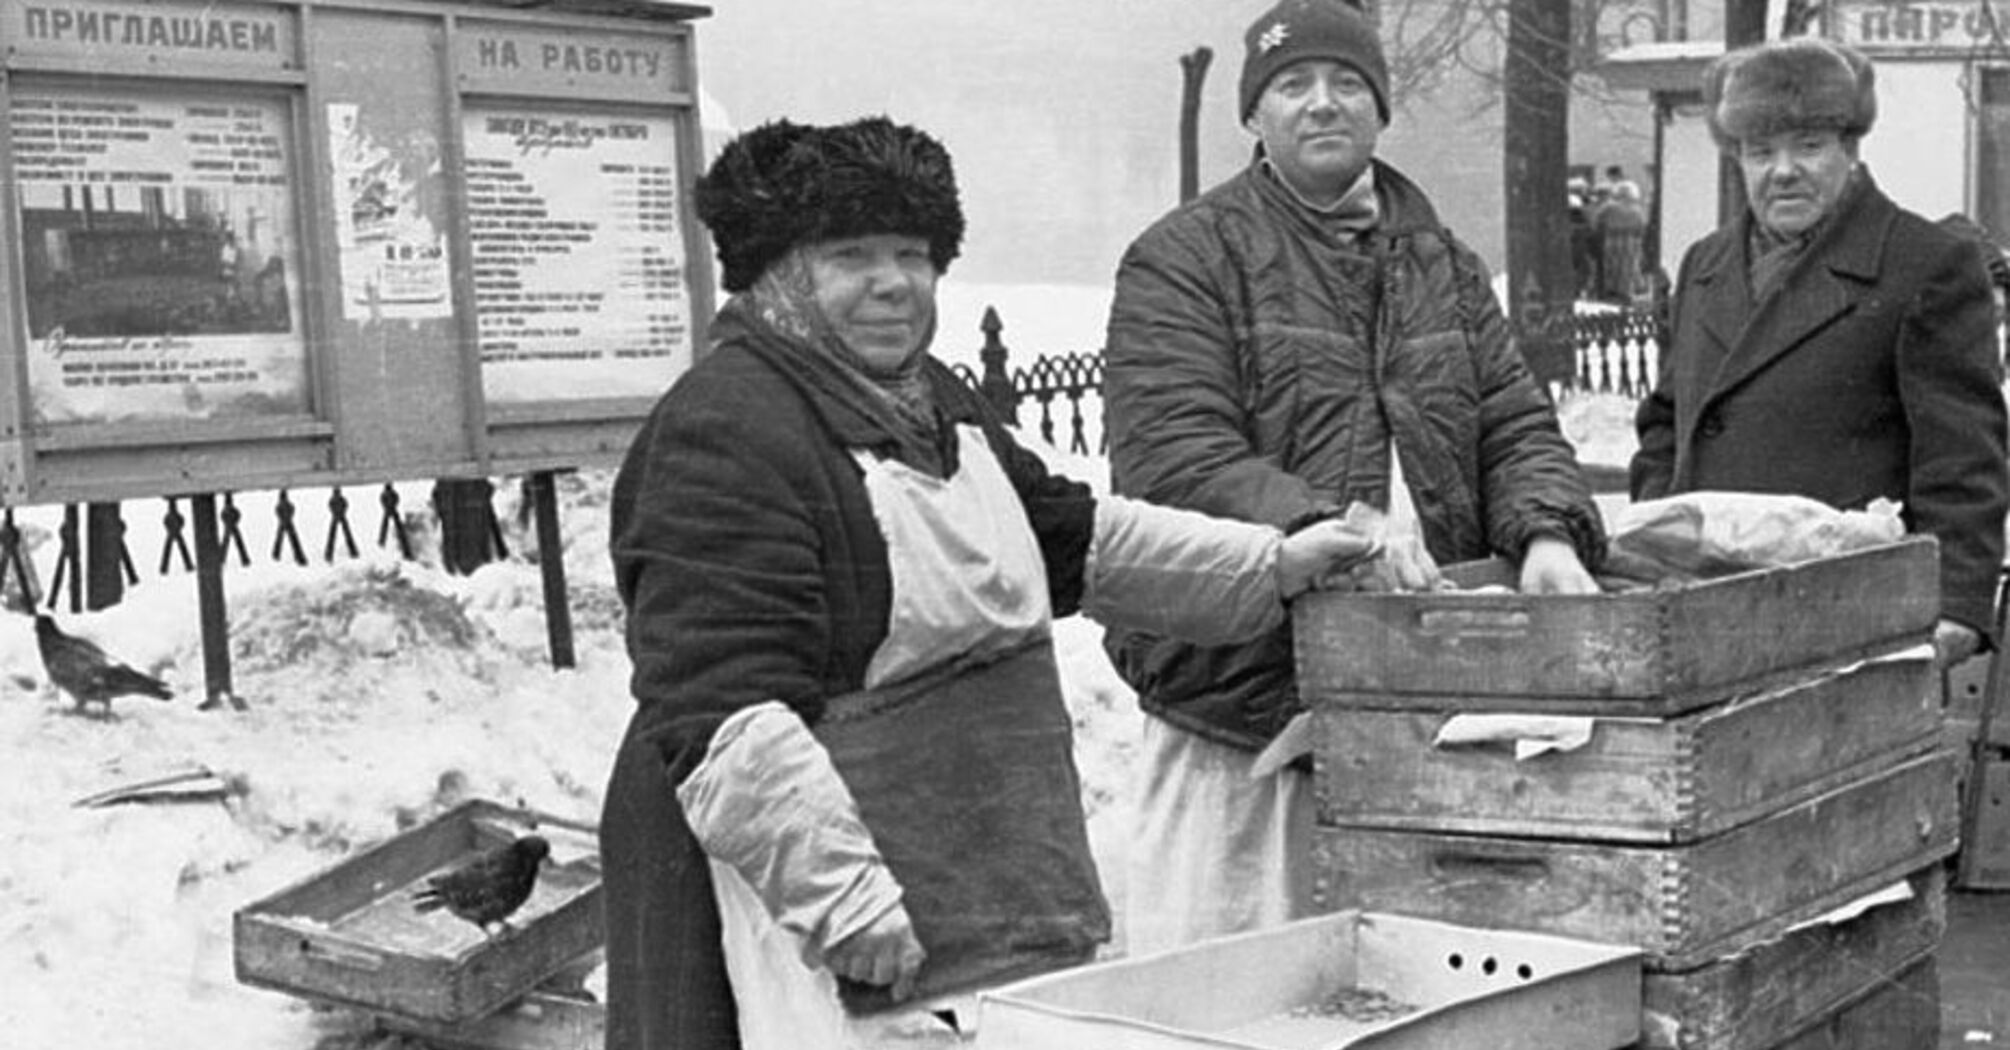 'Натуральні продукти' в СРСР - міф: що ж насправді додавали в їжу